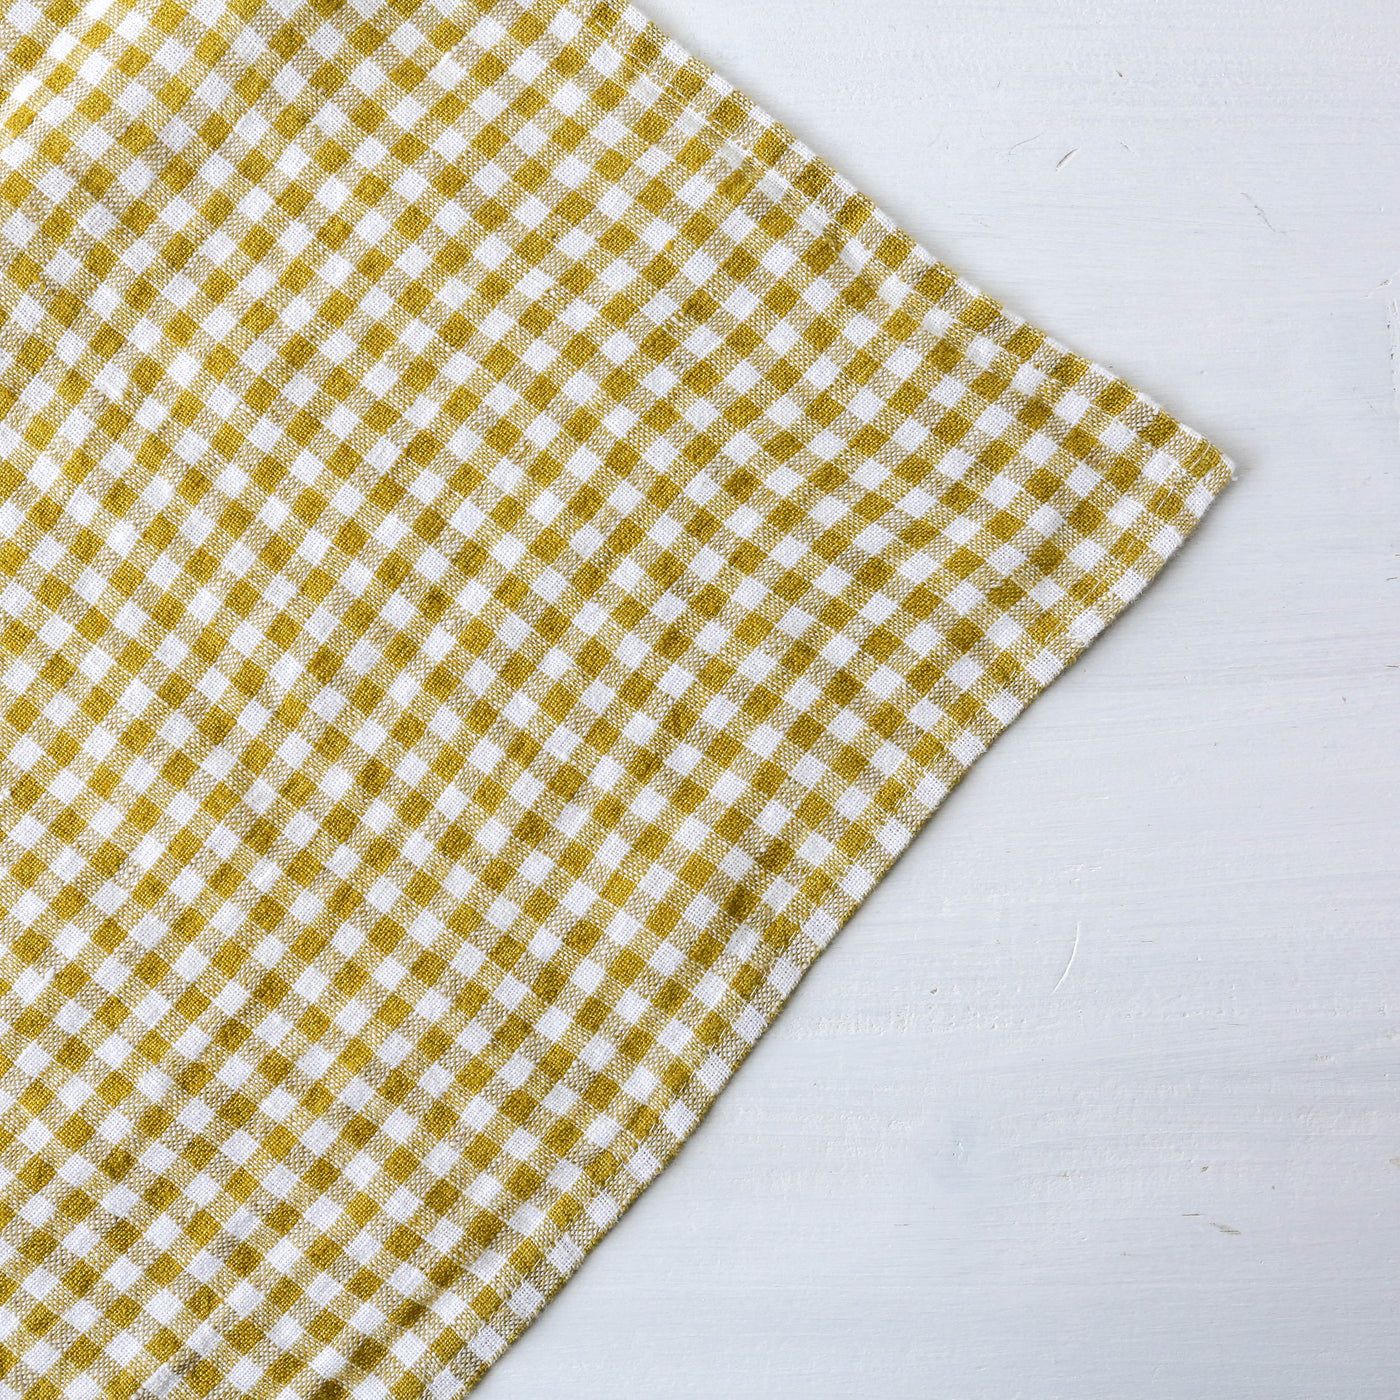 Washed Linen Natural Check Tea Towel - Citrus